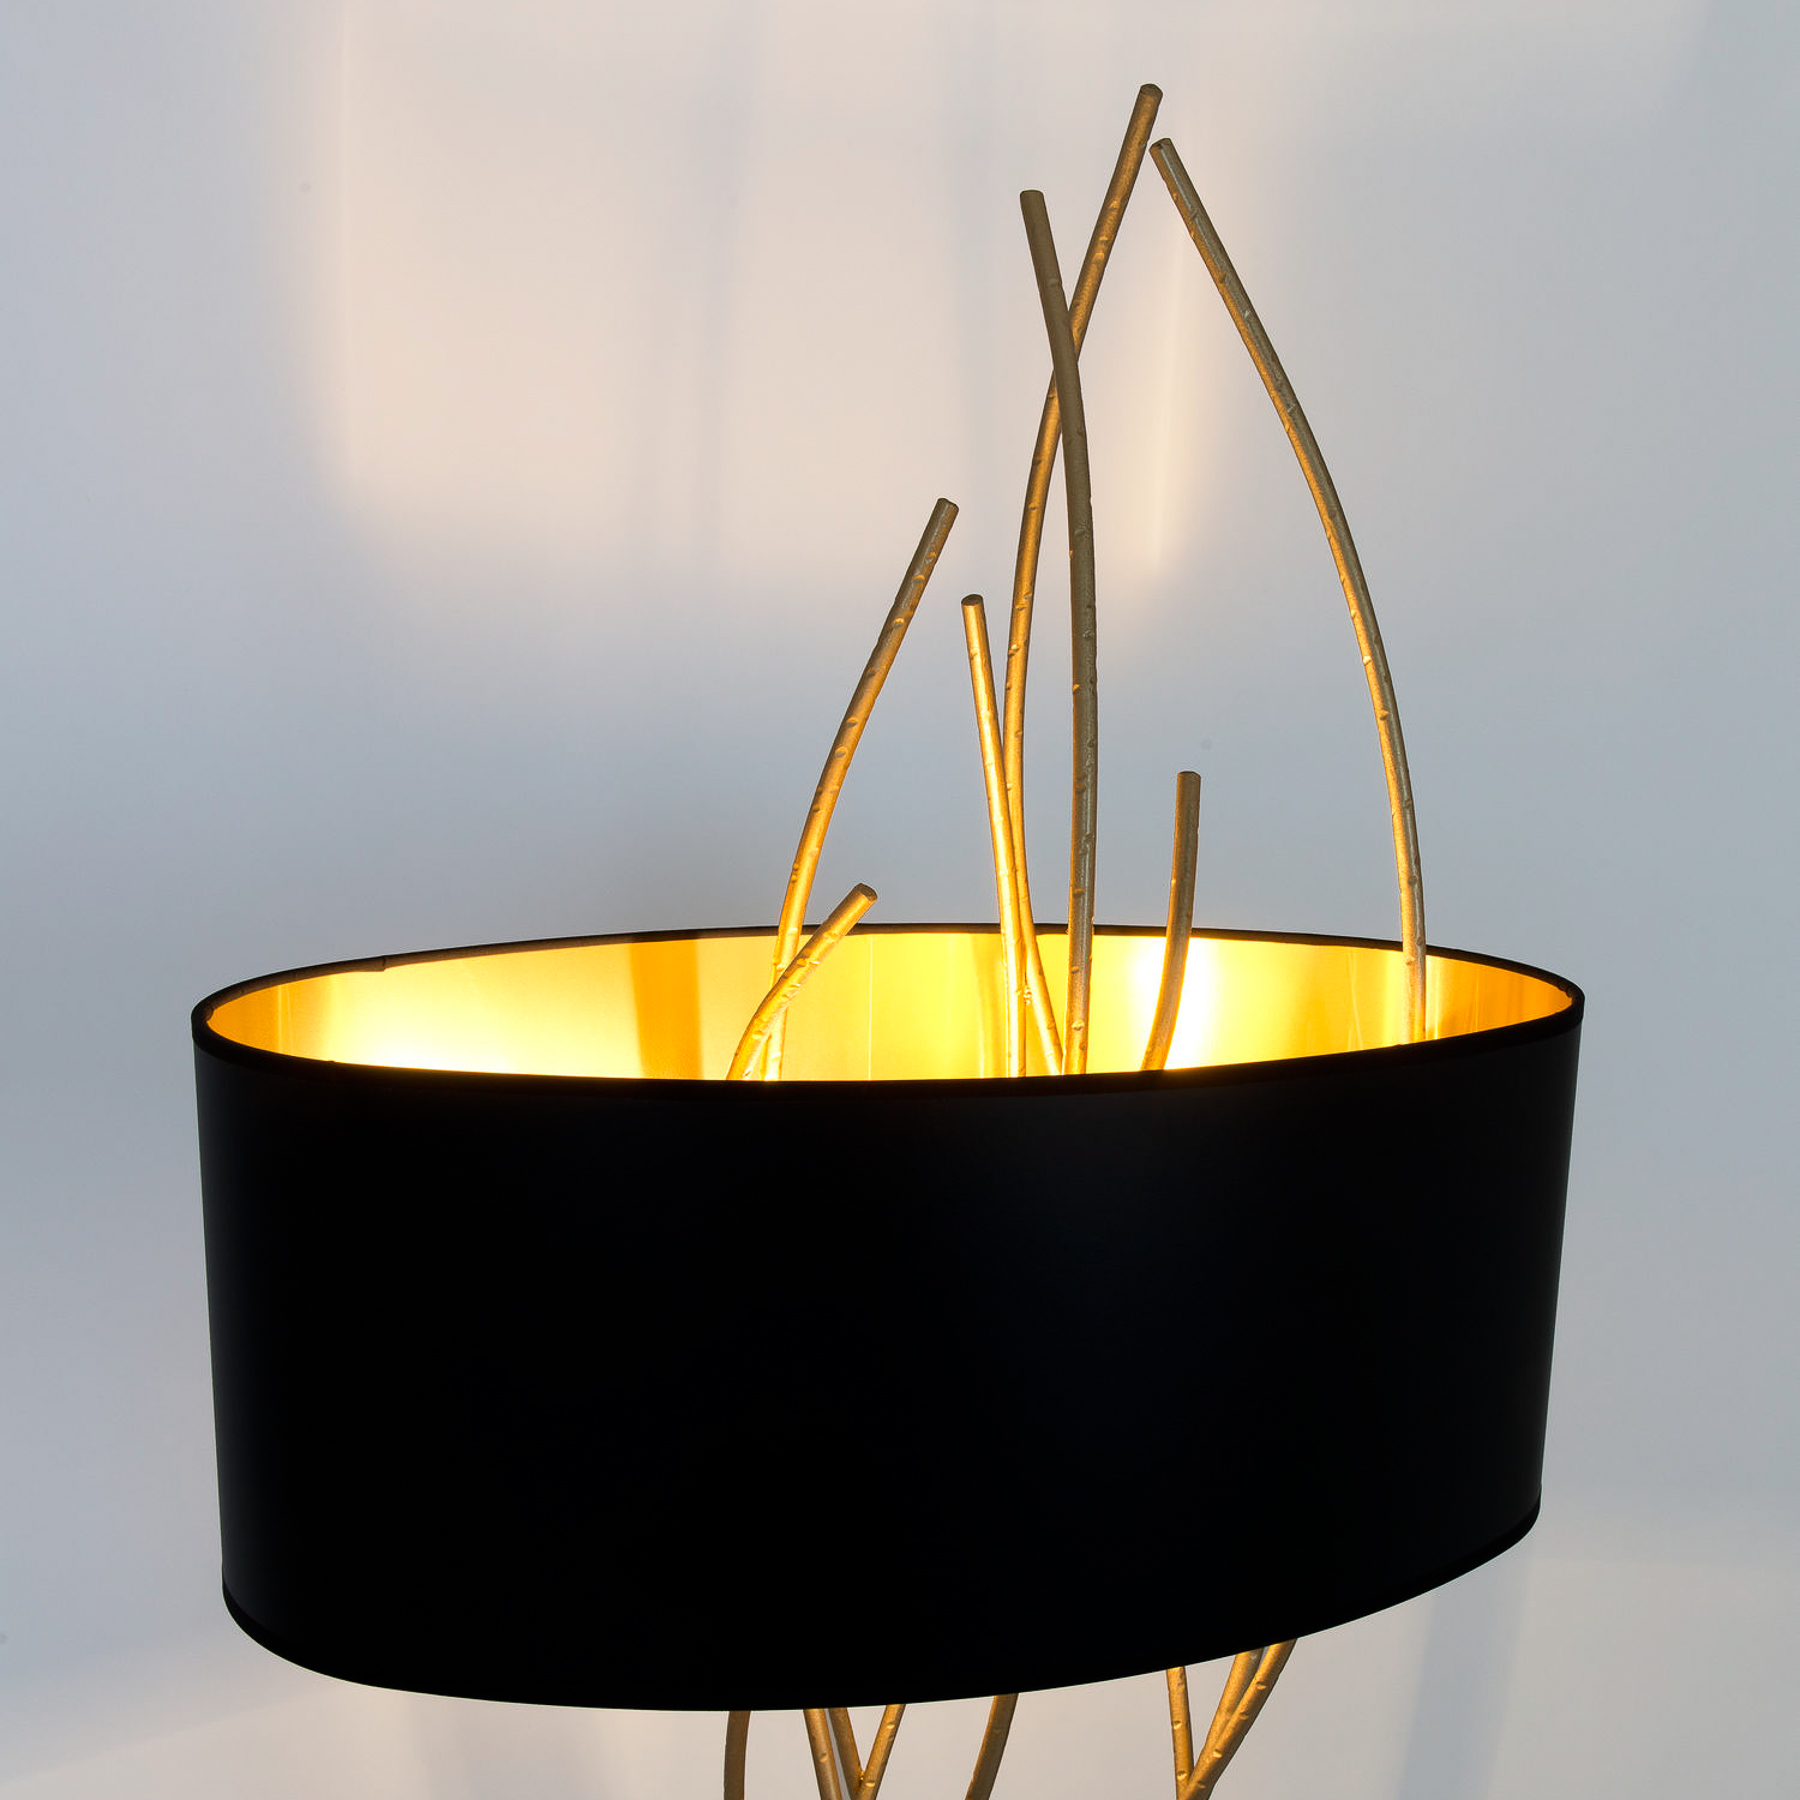 Lampe sur pied Elba ovale, or/noir, hauteur 180 cm, fer